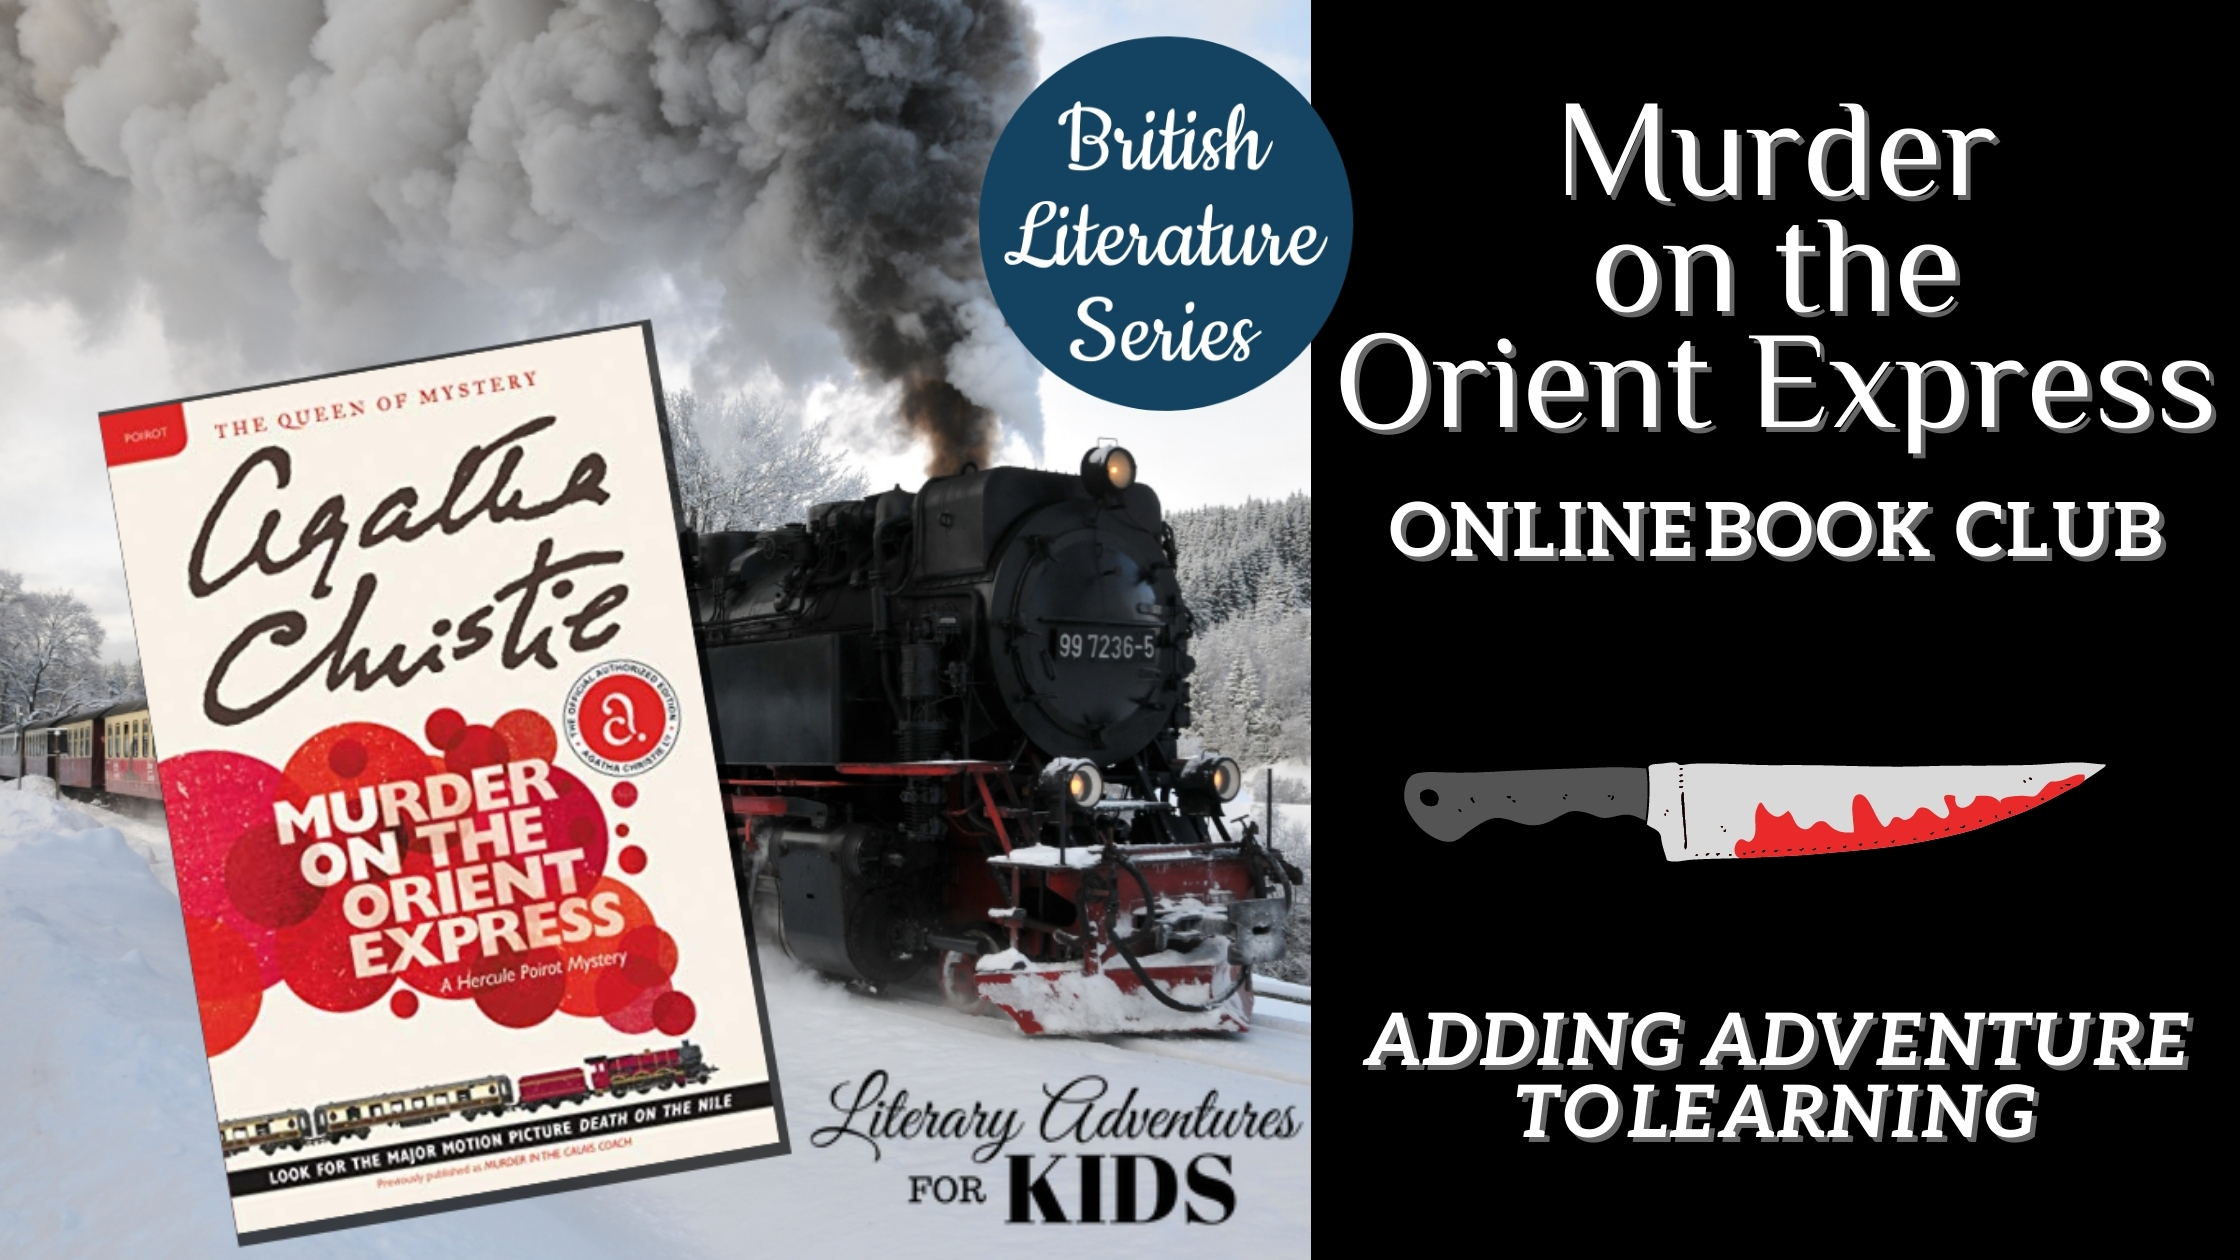 Agatha Christie - Murder on the Orient Express on Steam